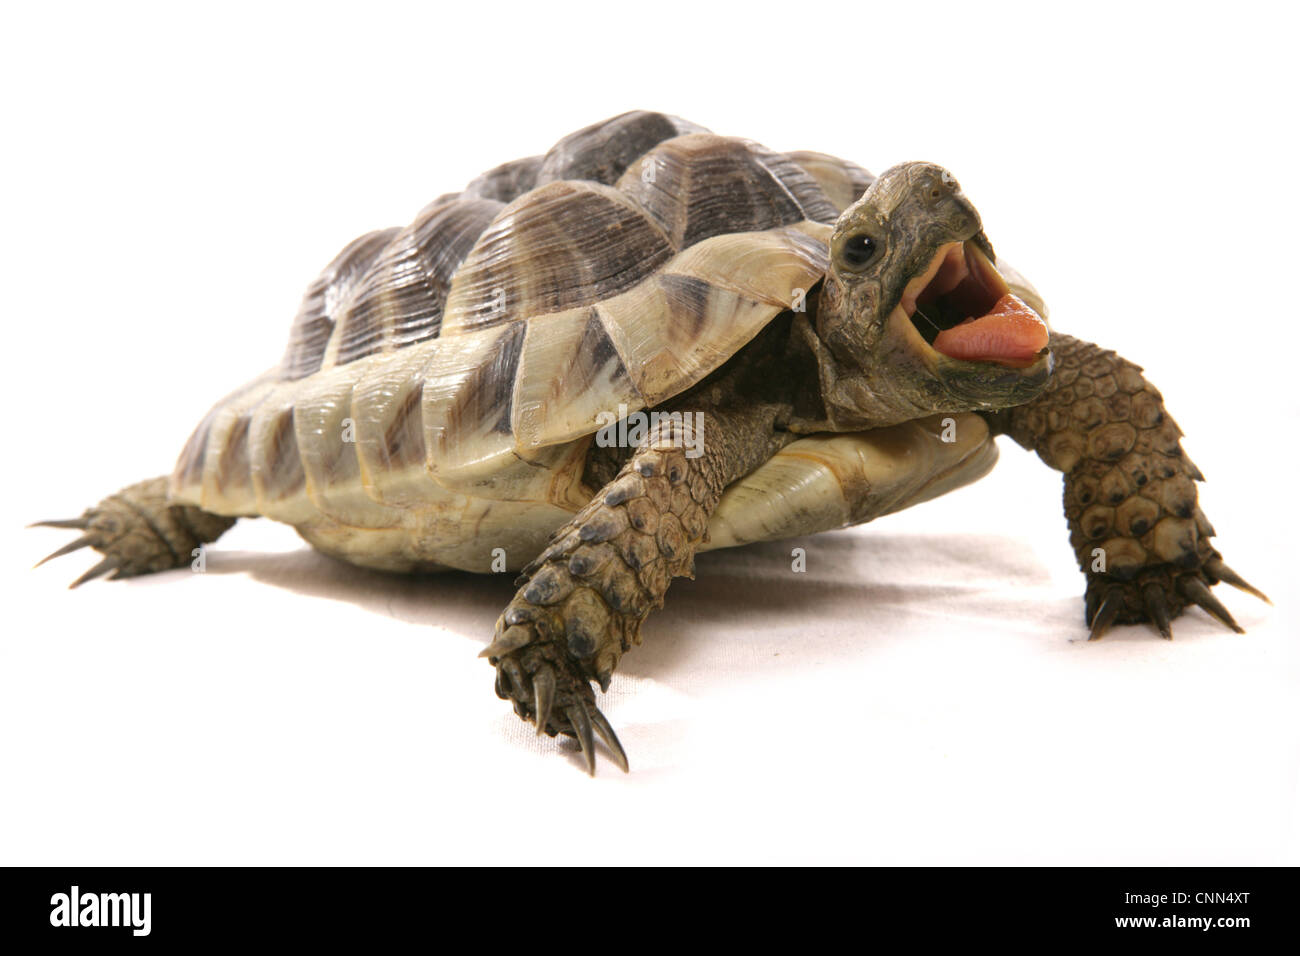 La tortue d'Hermann (Testudo hermanni) adulte, avec bouche ouverte Banque D'Images